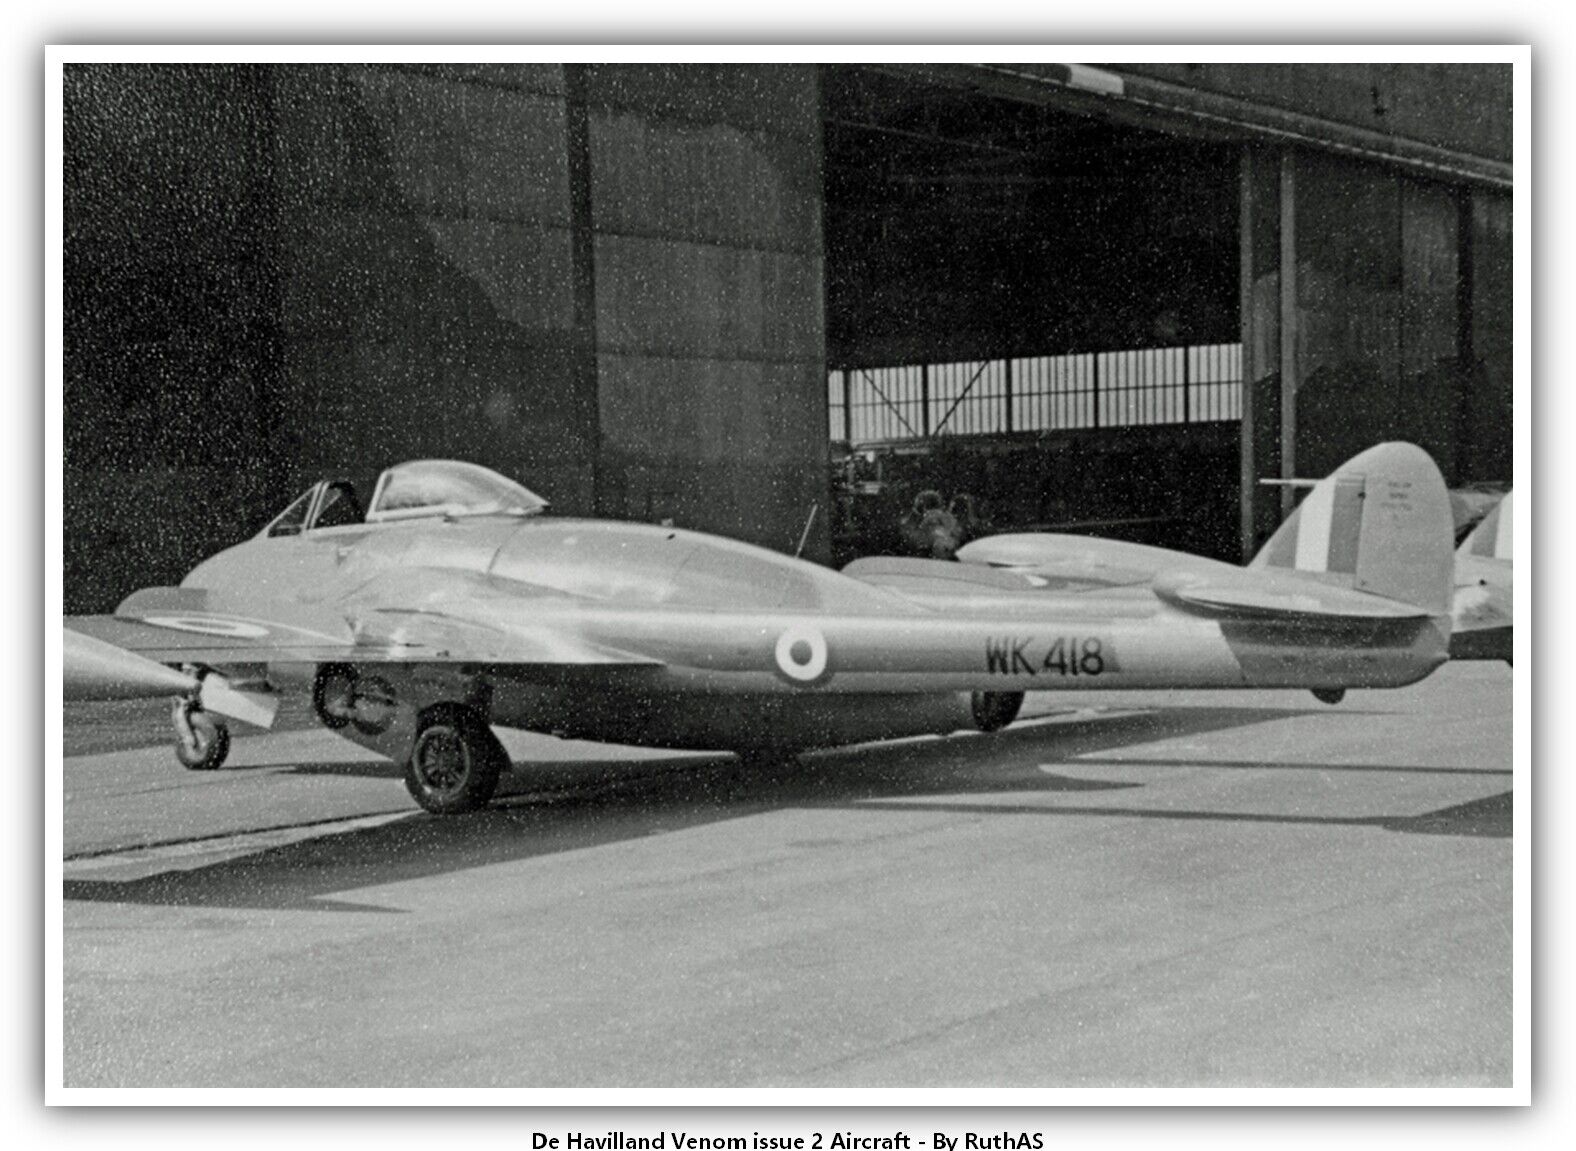 De Havilland Venom issue 2 Aircraft